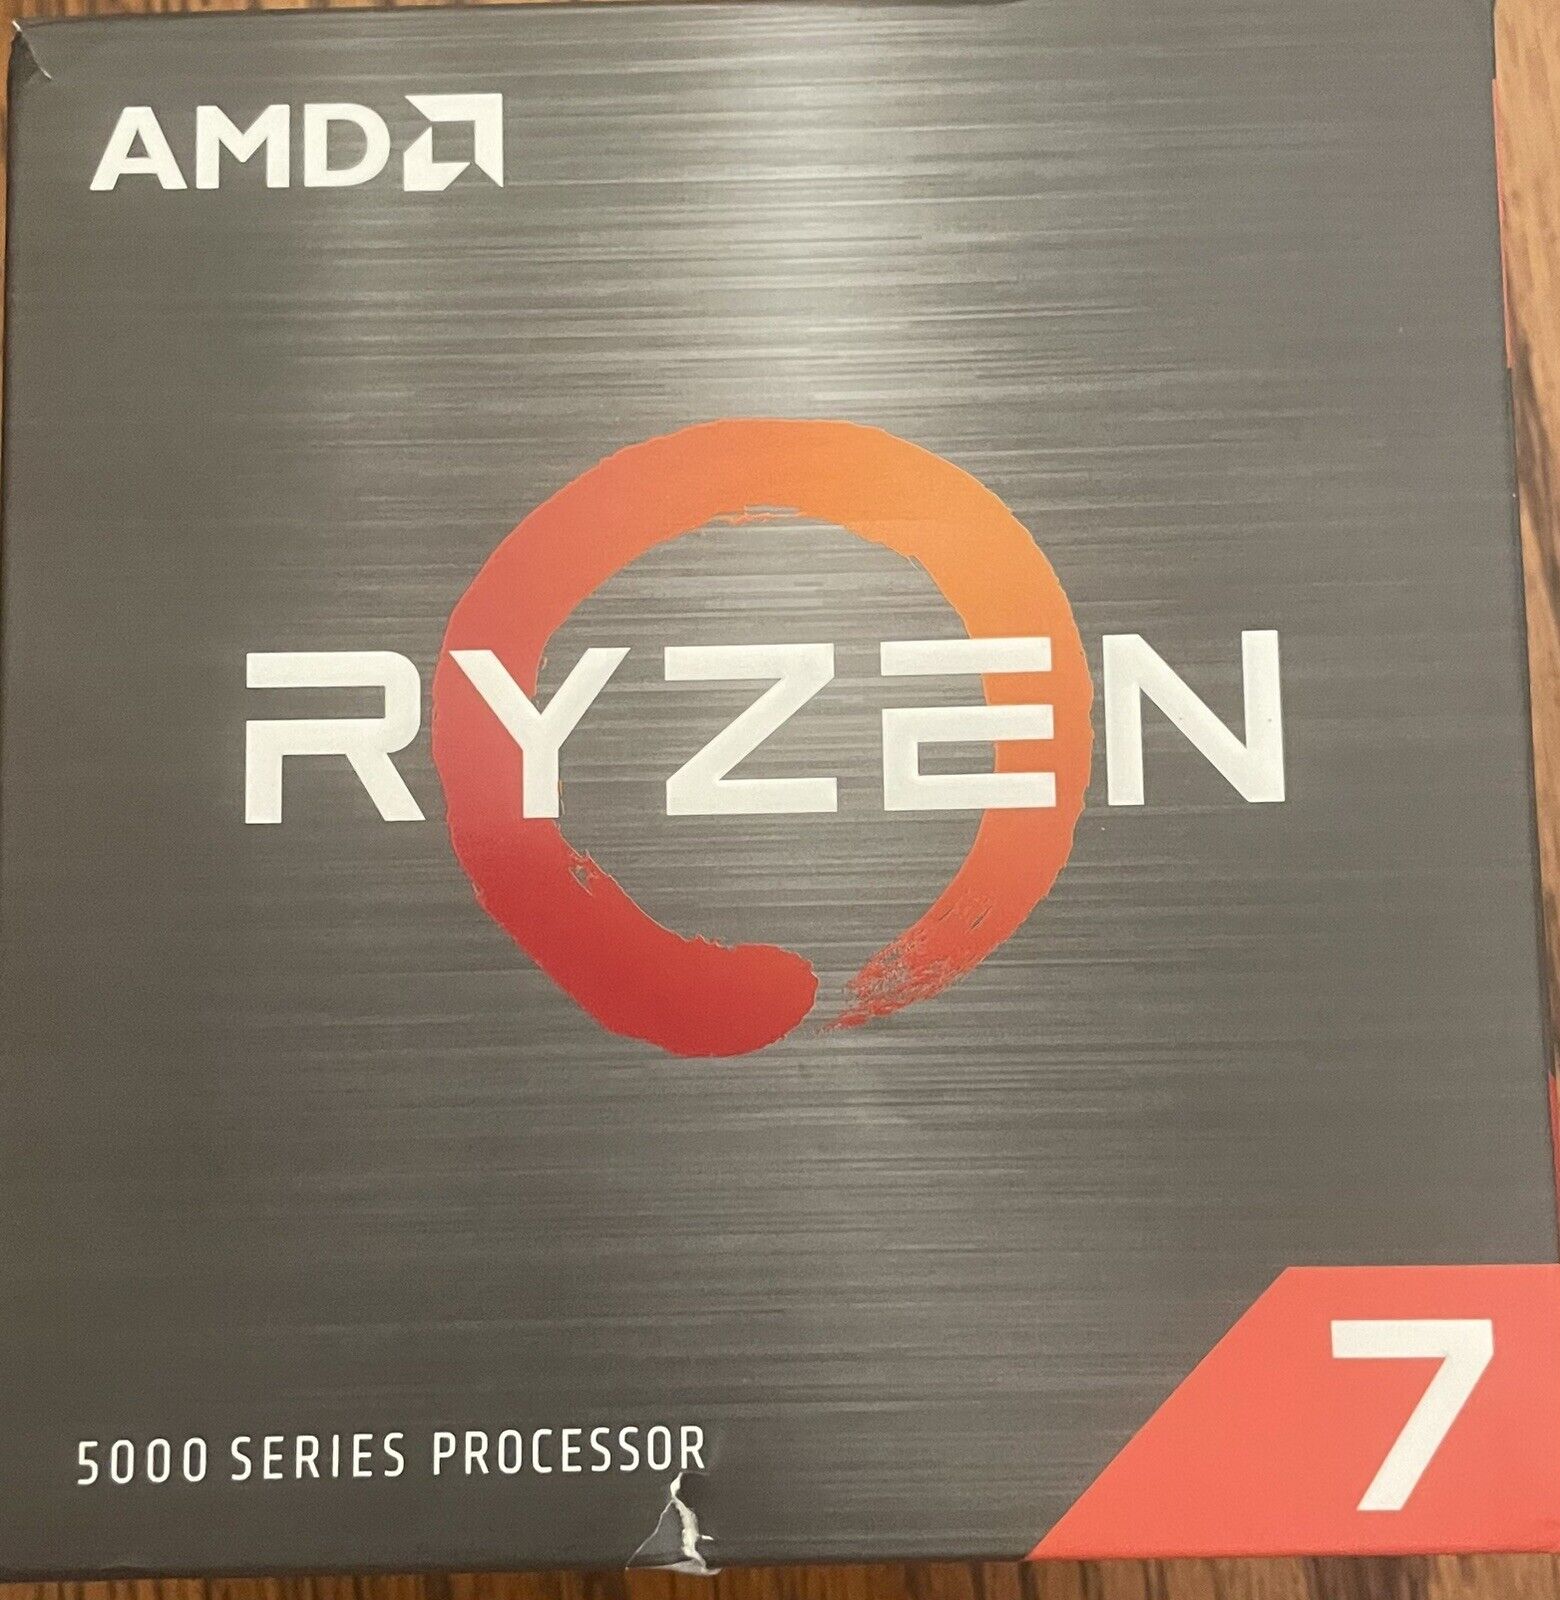 AMD Ryzen 7 5800X Processor (4.7GHz, 8 Cores, Socket AM4) Box - 100-100000063WOF